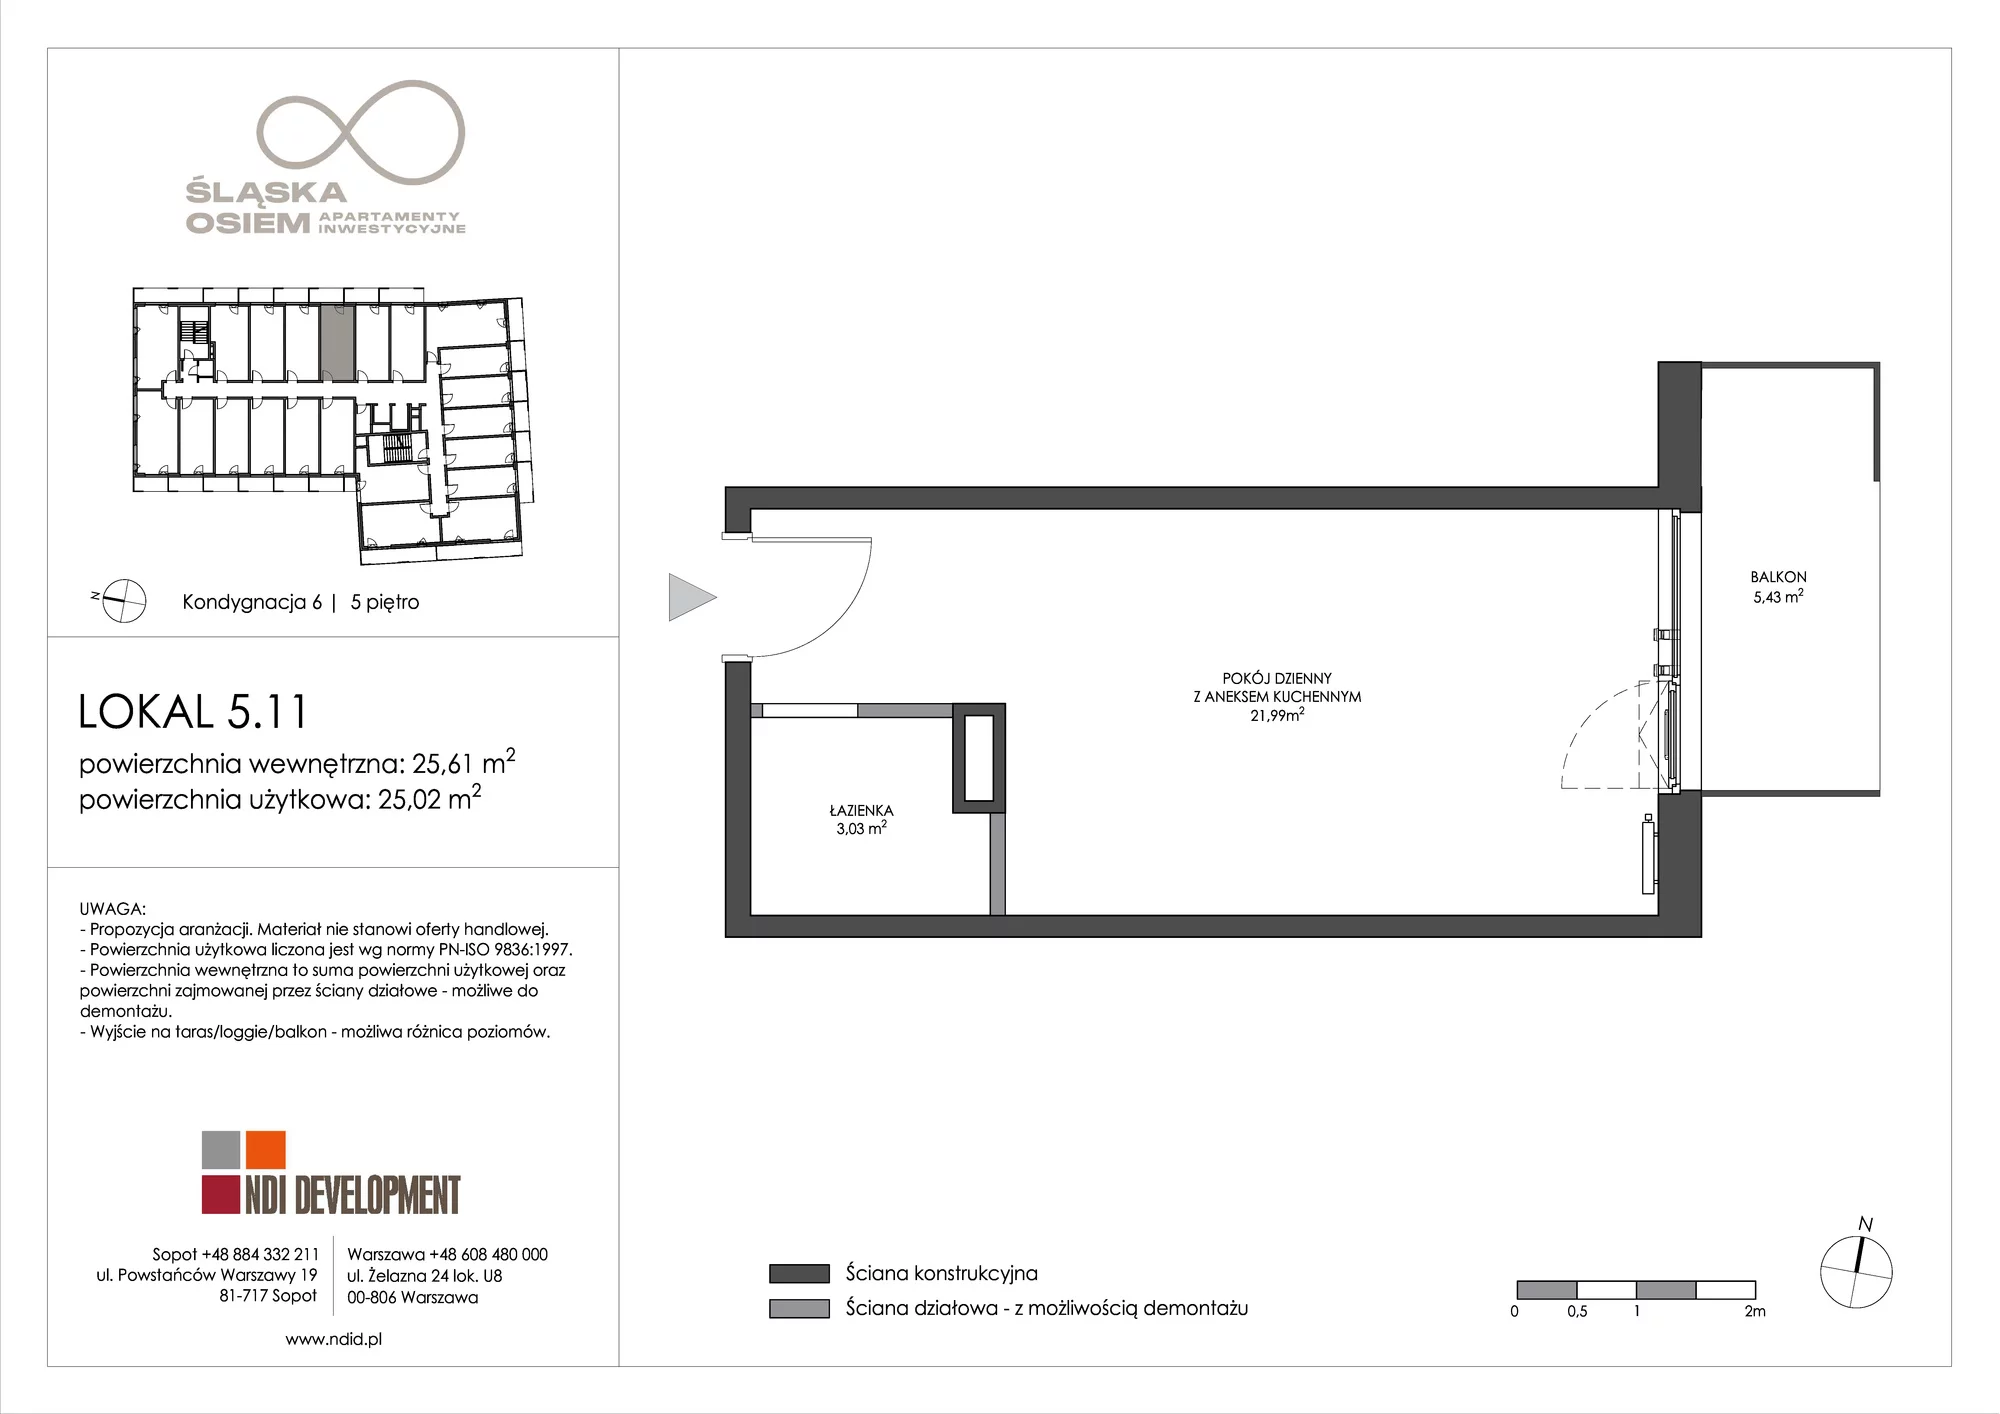 Apartament inwestycyjny 25,61 m², piętro 5, oferta nr 5.11, Śląska Osiem, Gdańsk, Przymorze, ul. Śląska 8